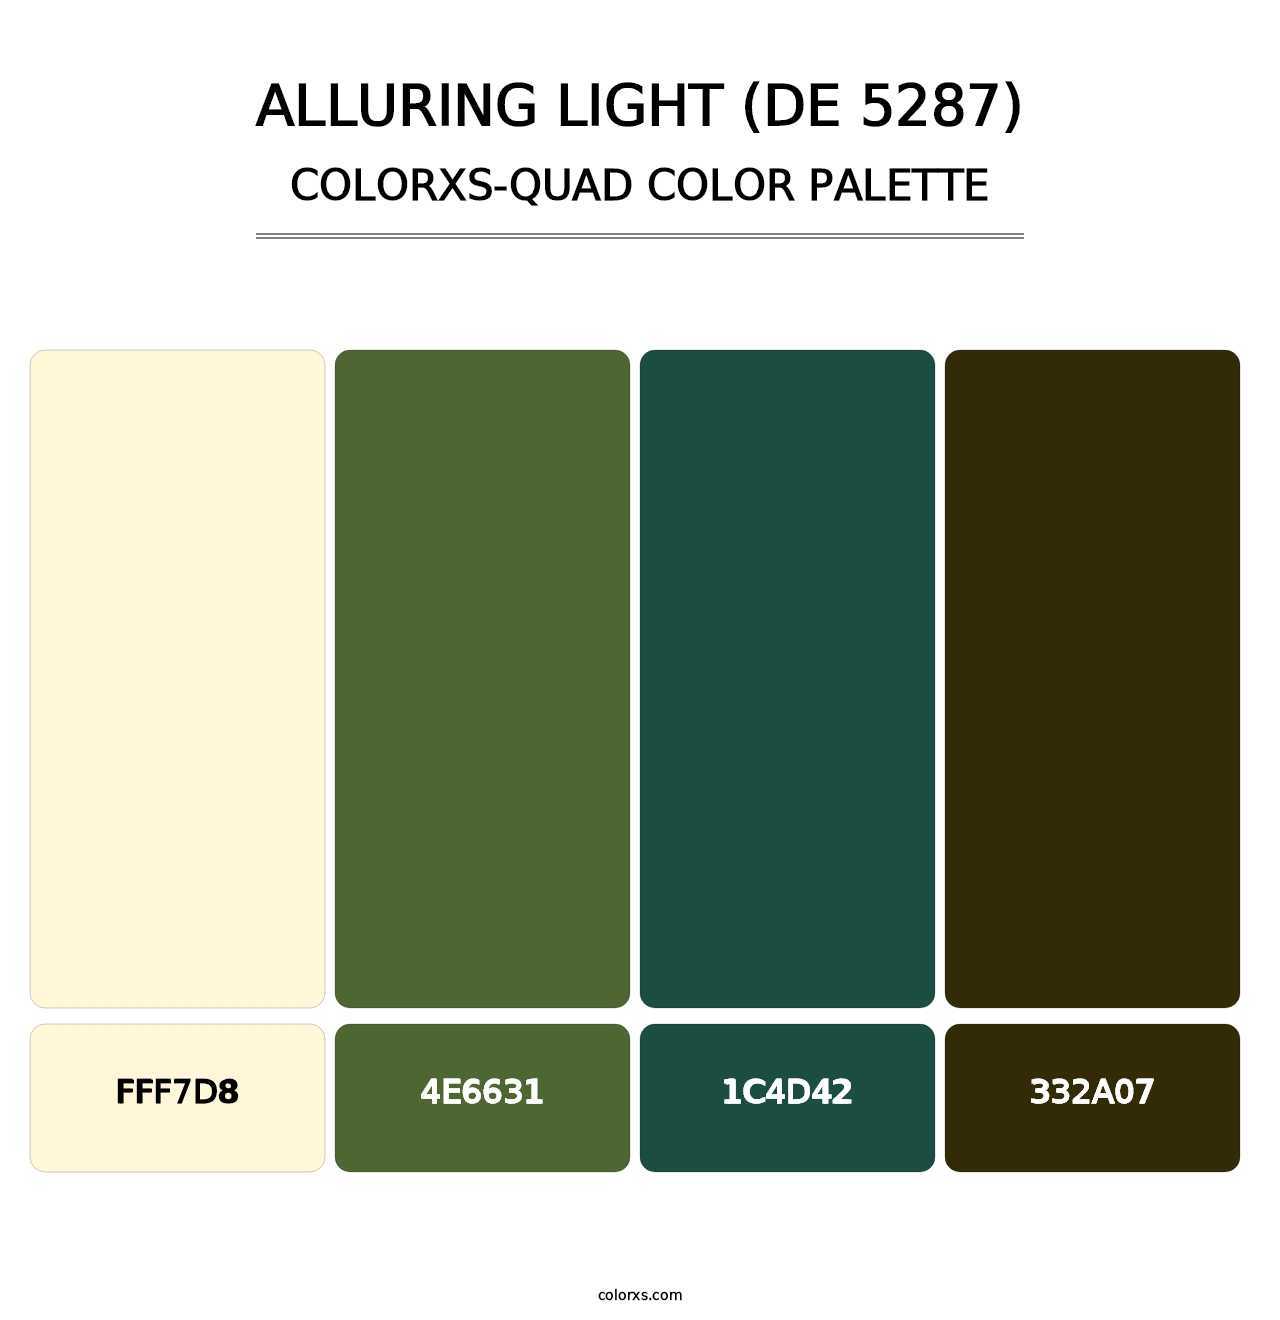 Alluring Light (DE 5287) - Colorxs Quad Palette